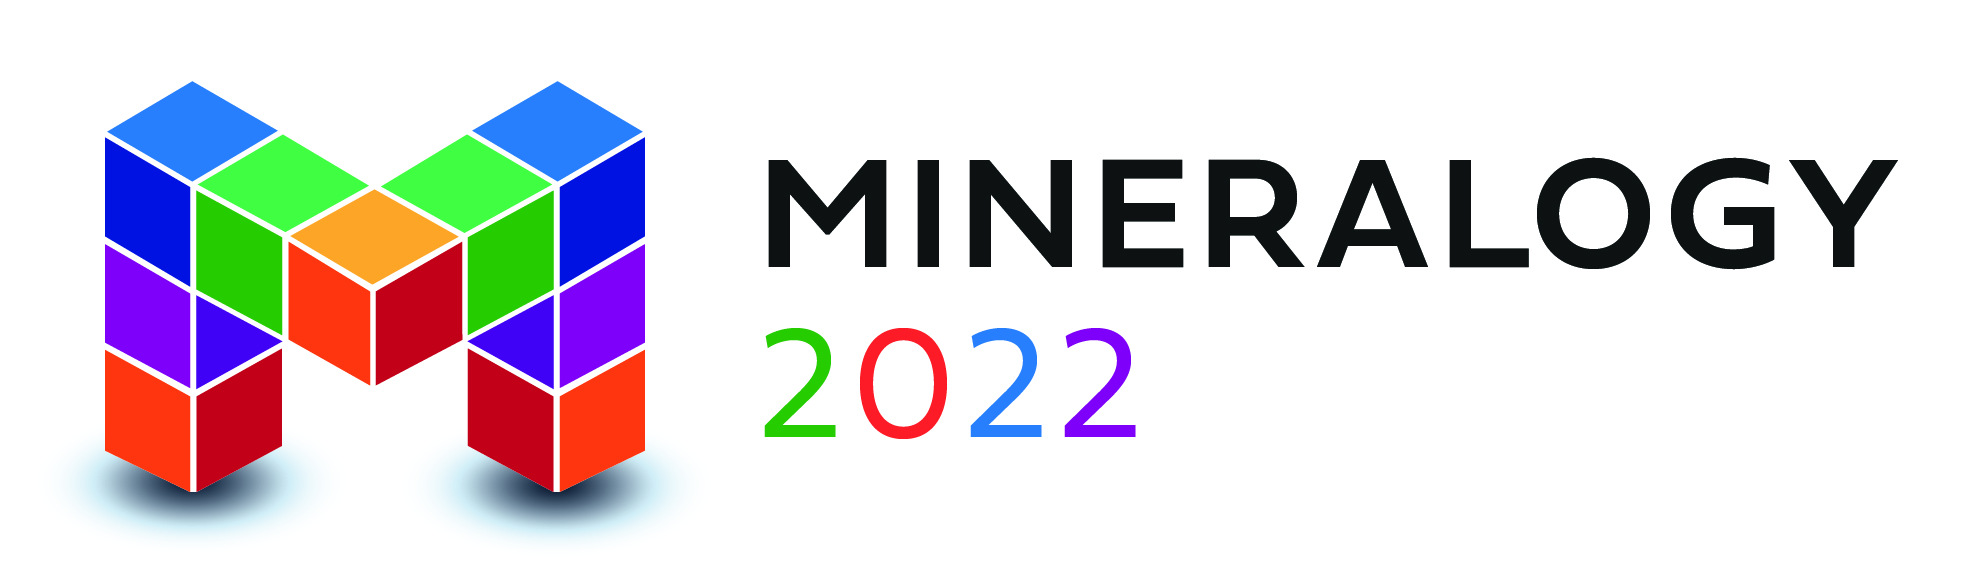 SFMC – Année de la minéralogie 2022